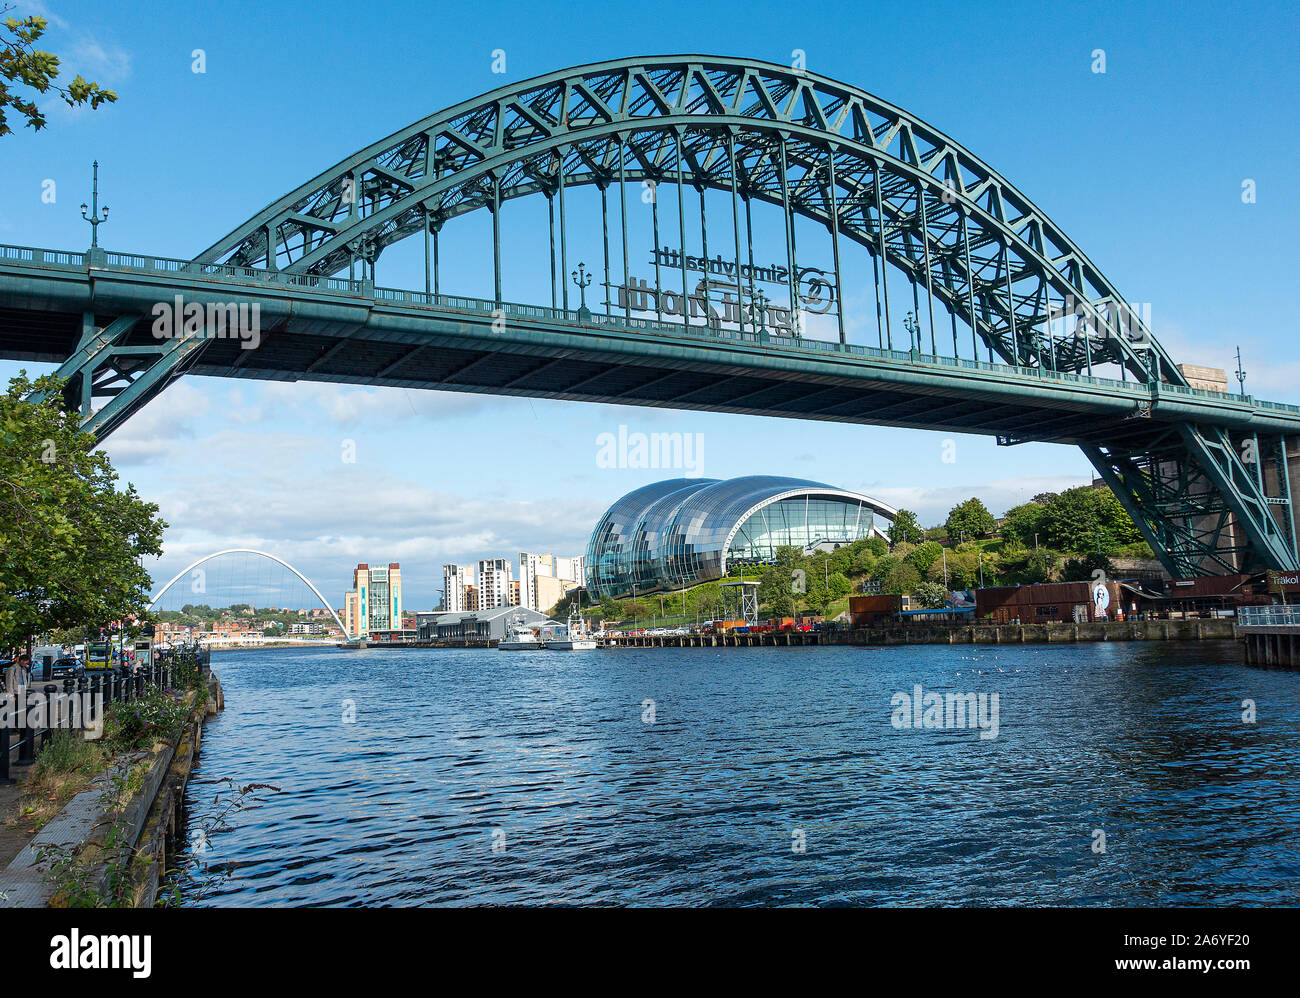 Tyne und Millennium Bridges, Sage Gateshead und Baltic Center am Fluss Tyne Tyne und Wear England Großbritannien Stockfoto